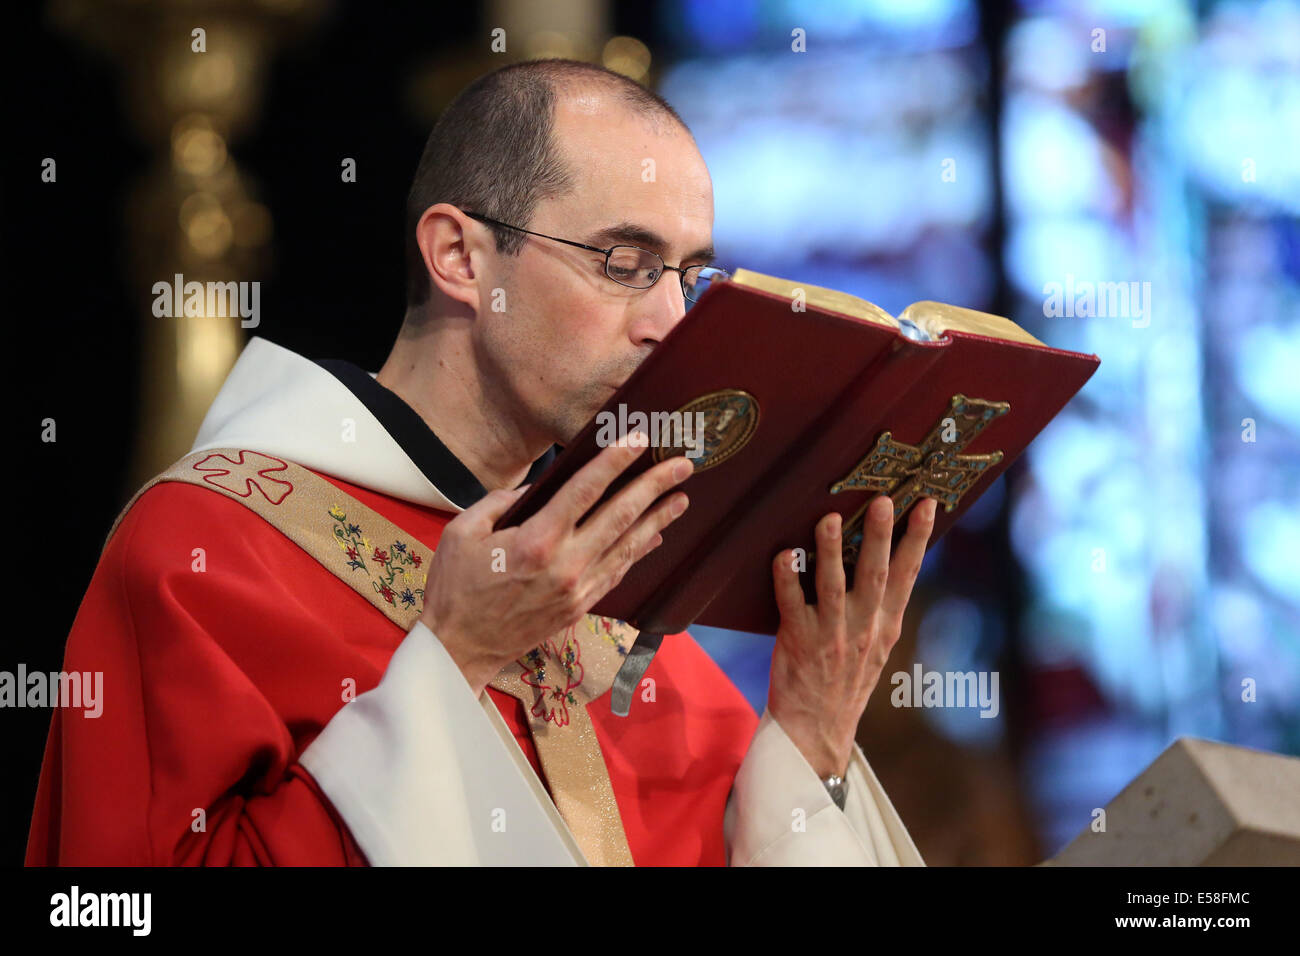 Prêtre catholique, embrassant la bible au cours d'un service dans une église catholique de Paris, France Banque D'Images